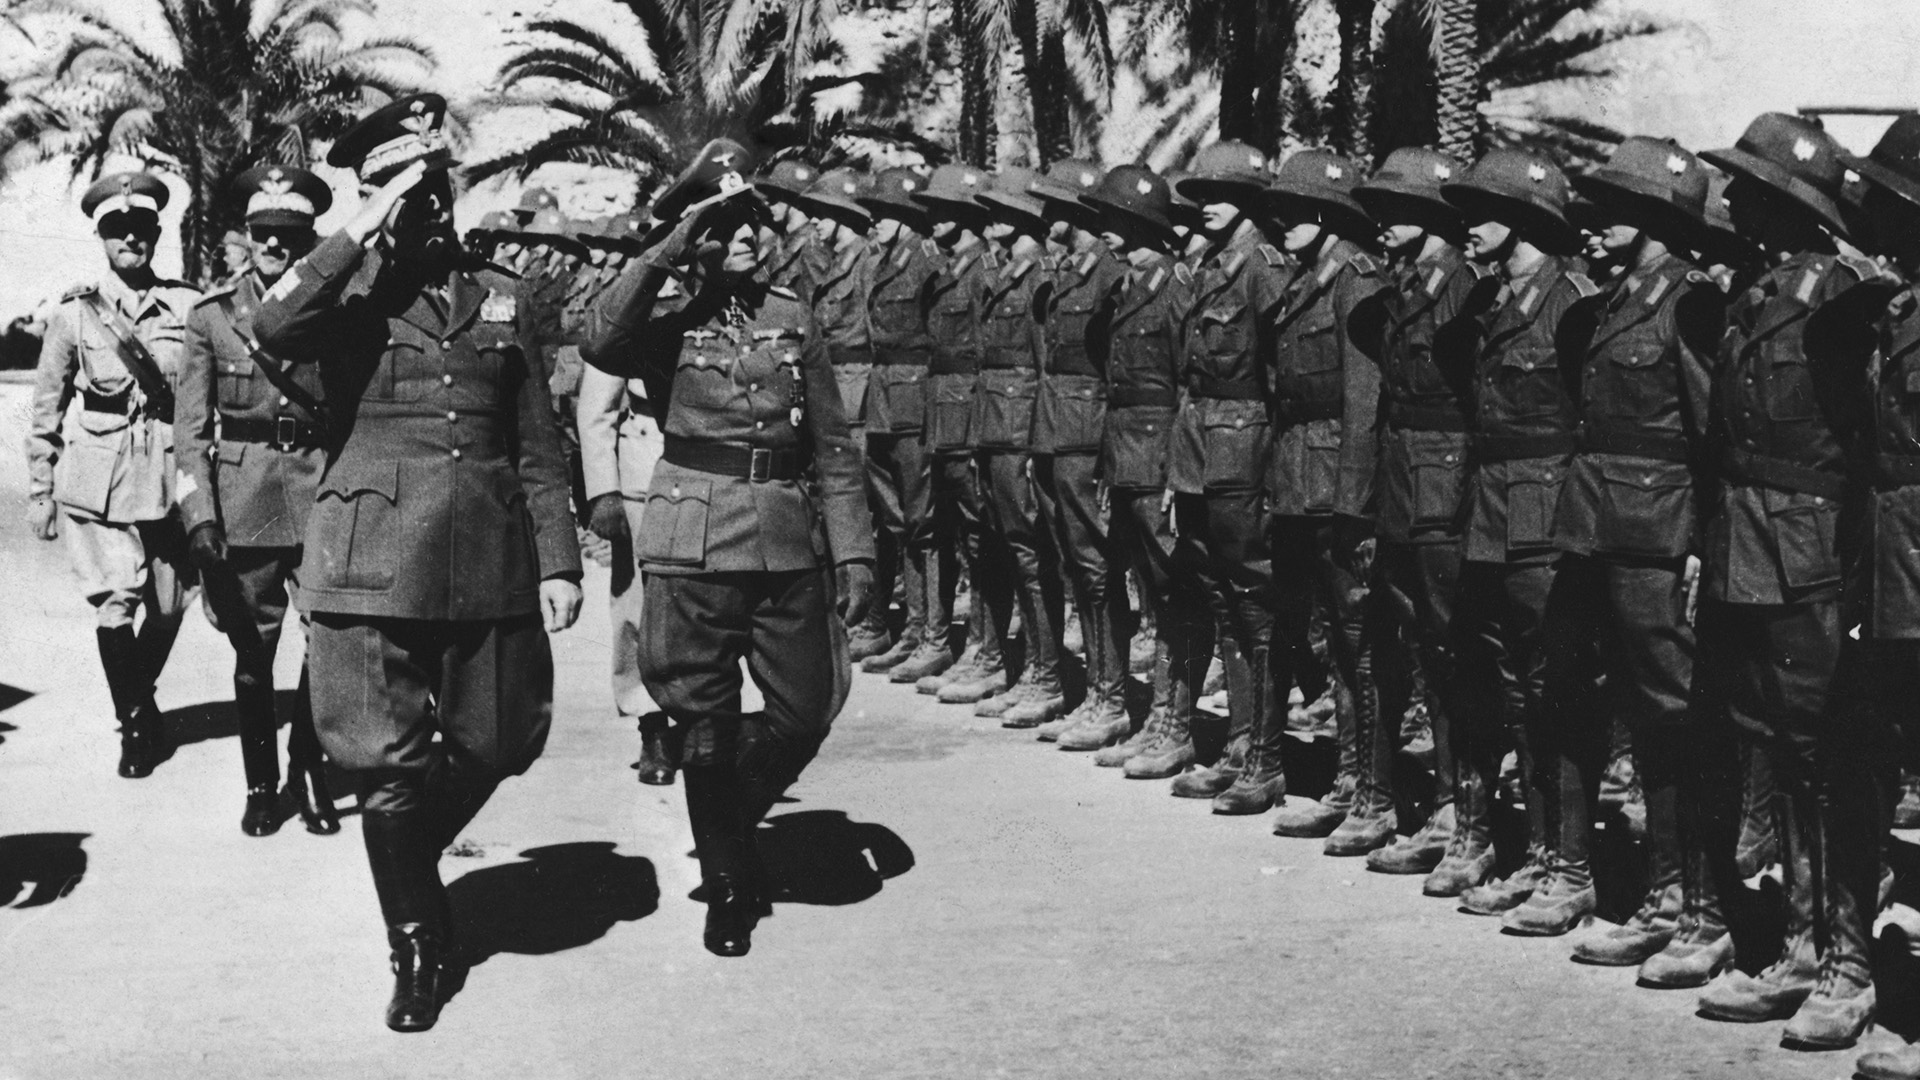 Rommel y el general italiano Italo Gariboldi inspeccionan las tropas del Eje en África el 21 de abril de 1941 (Photo by Heinrich Hoffmann/Keystone/Getty Images)